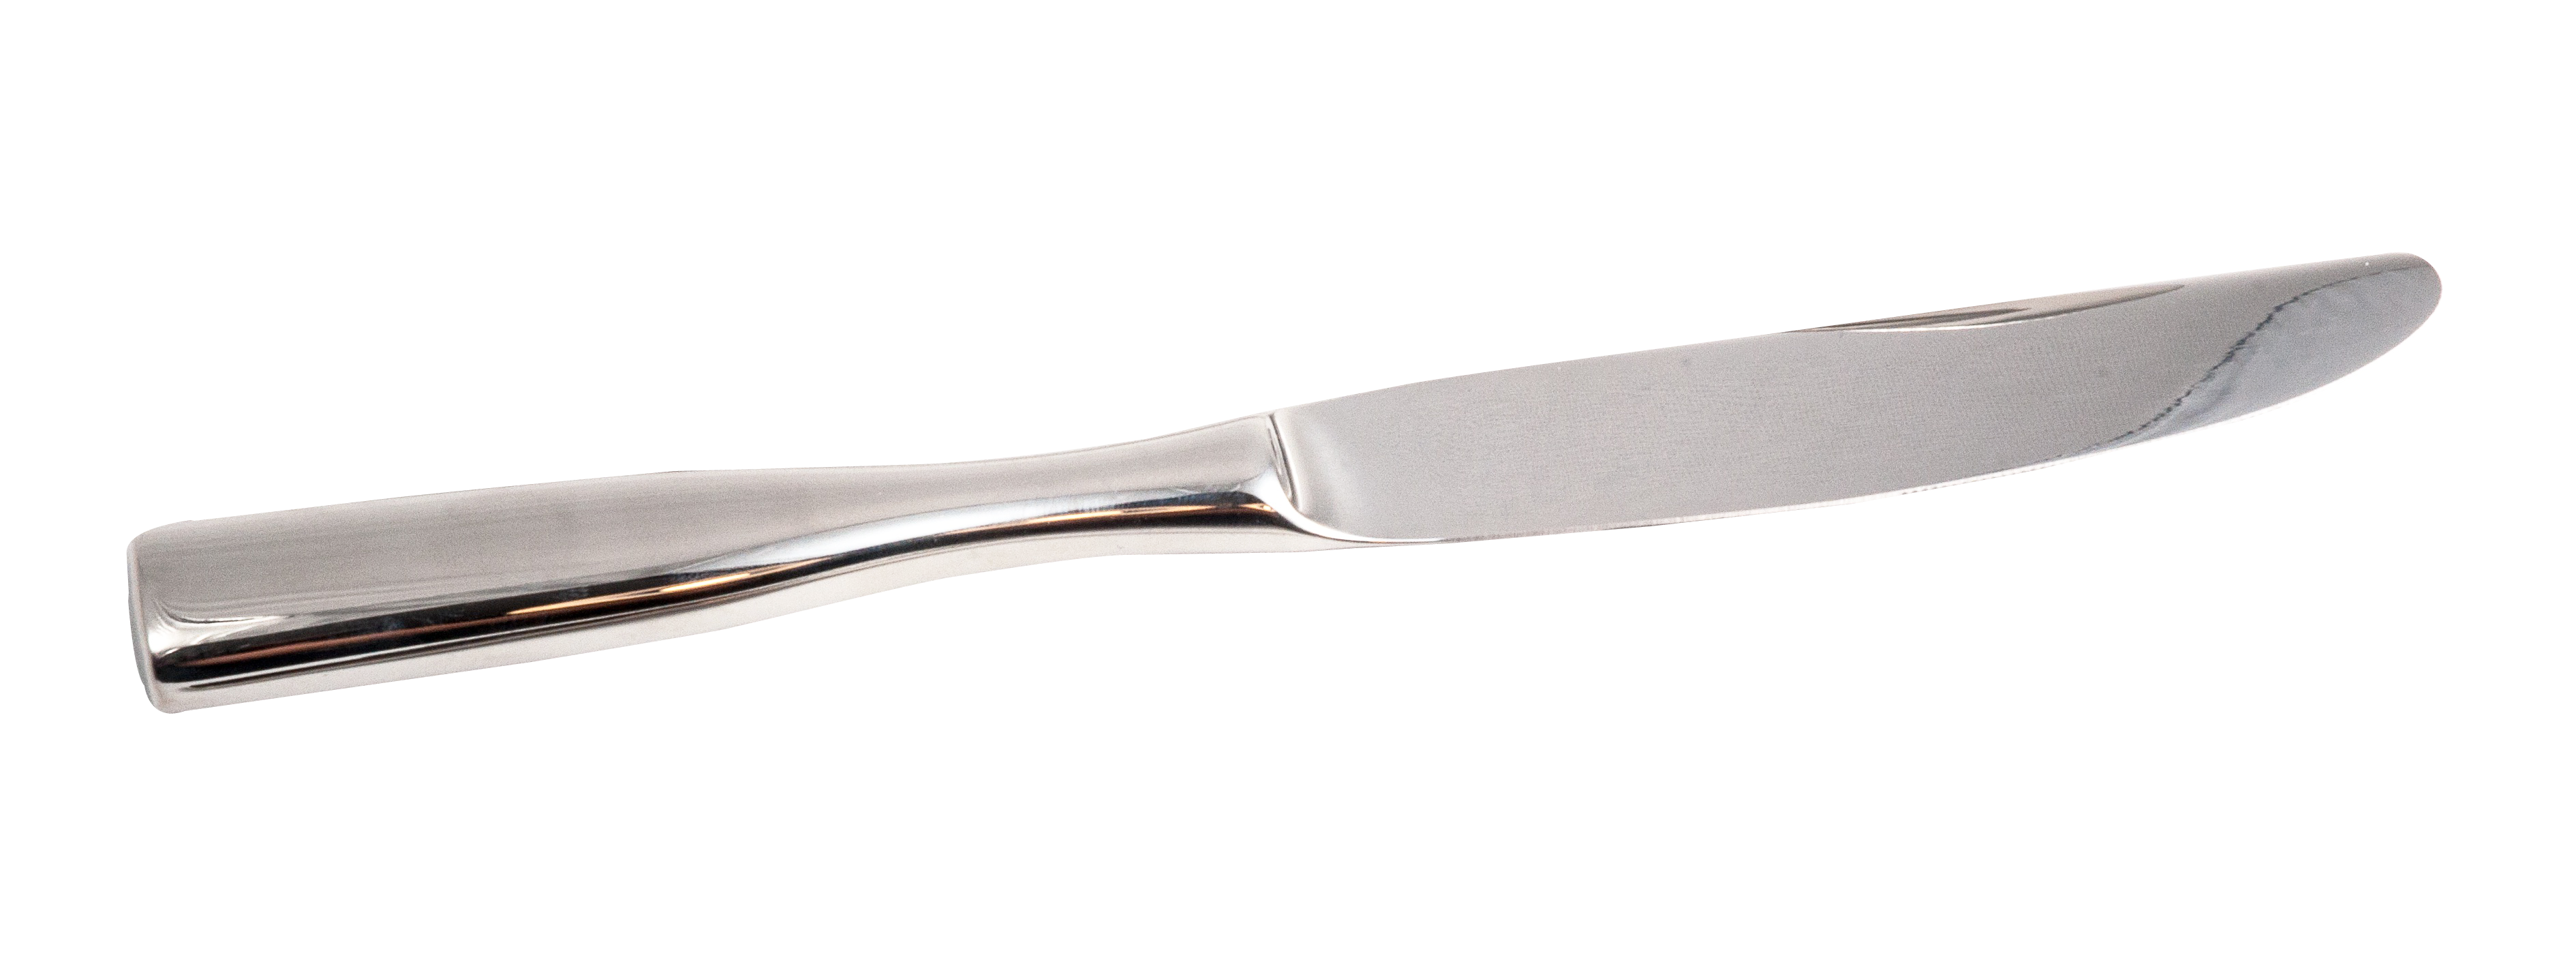 knife clipart dinner knife